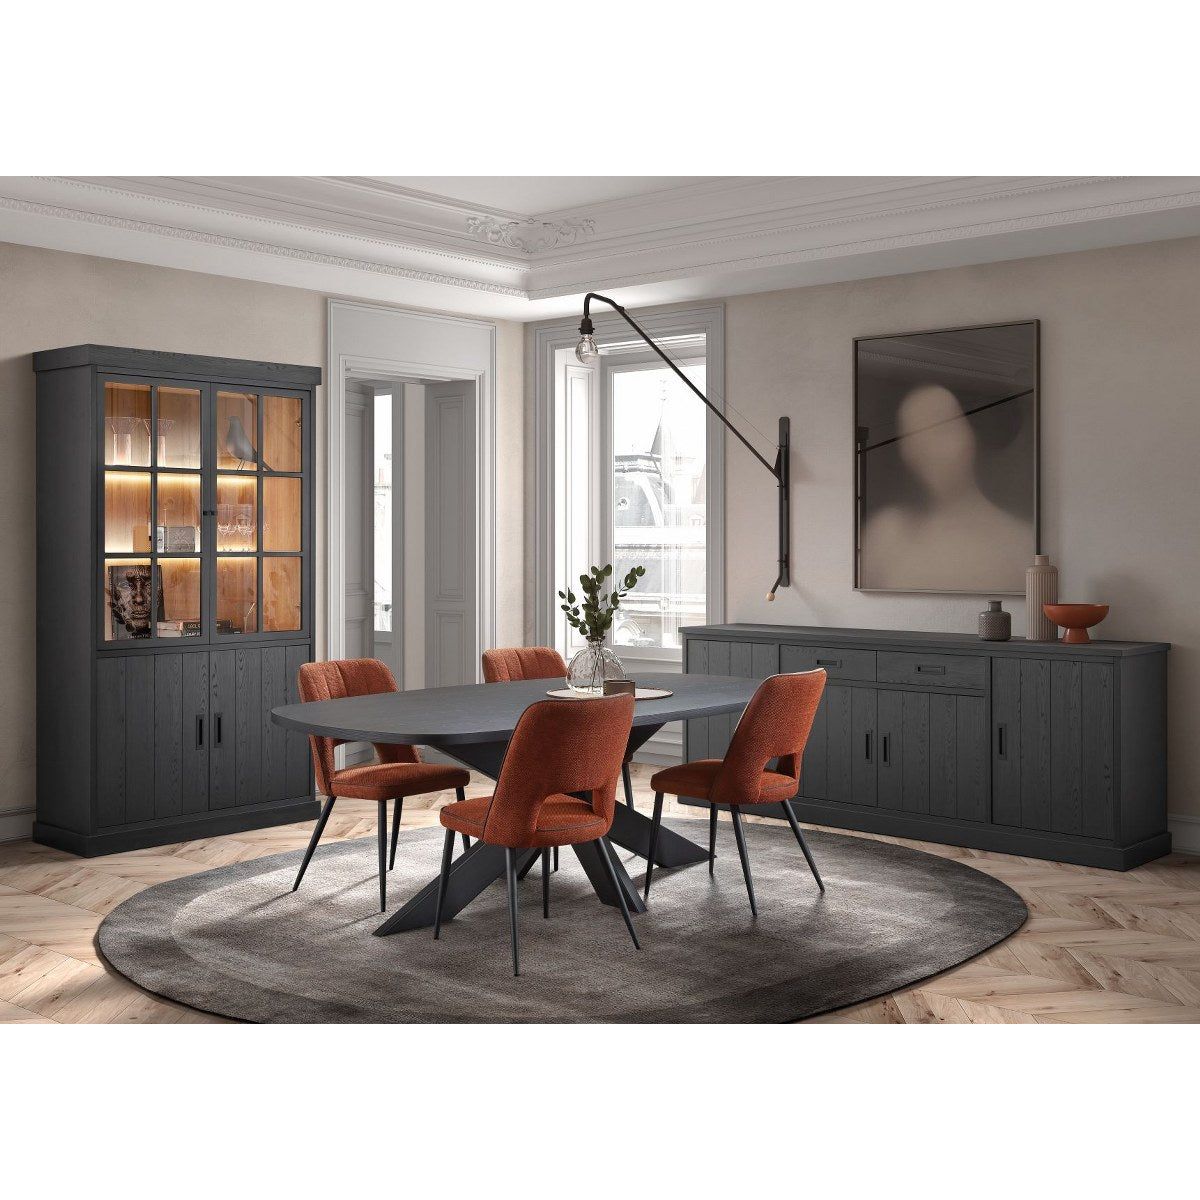 Coffee table | Furniture series Sigma | black | 125 x 68 x 51 (h)